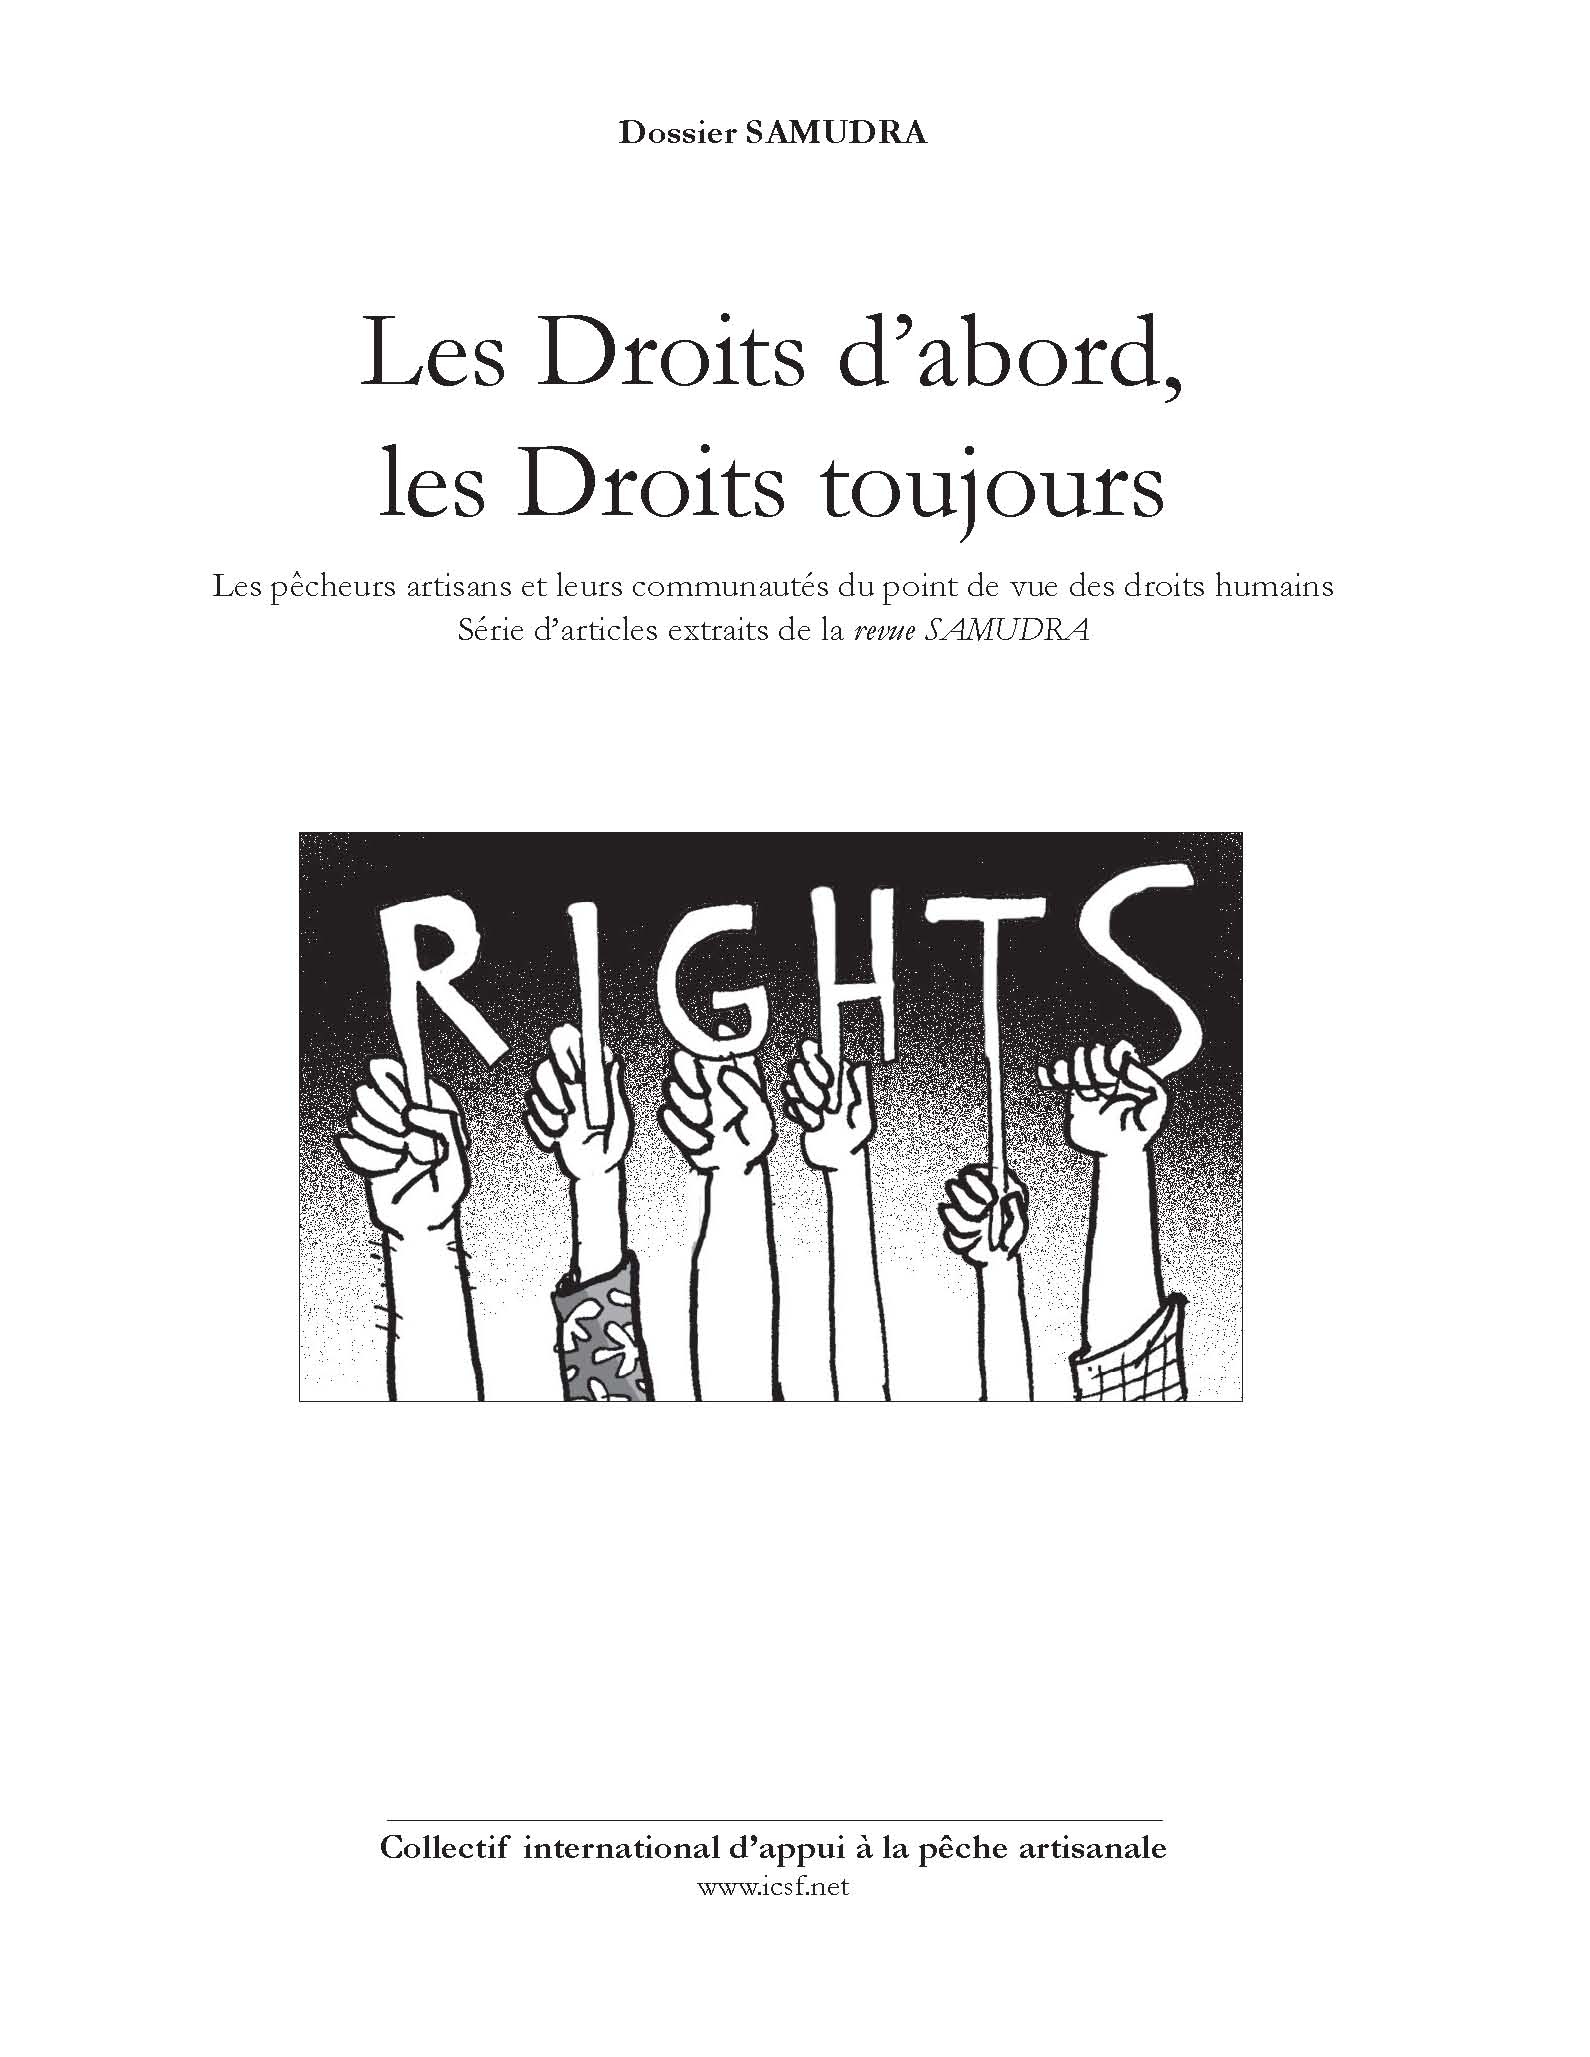 Les Droits d’abord, les Droits toujours : Les pecheurs artisans et leurs communautés du point de vue des droits humains – Série d’articles extraits de la revue Samudra